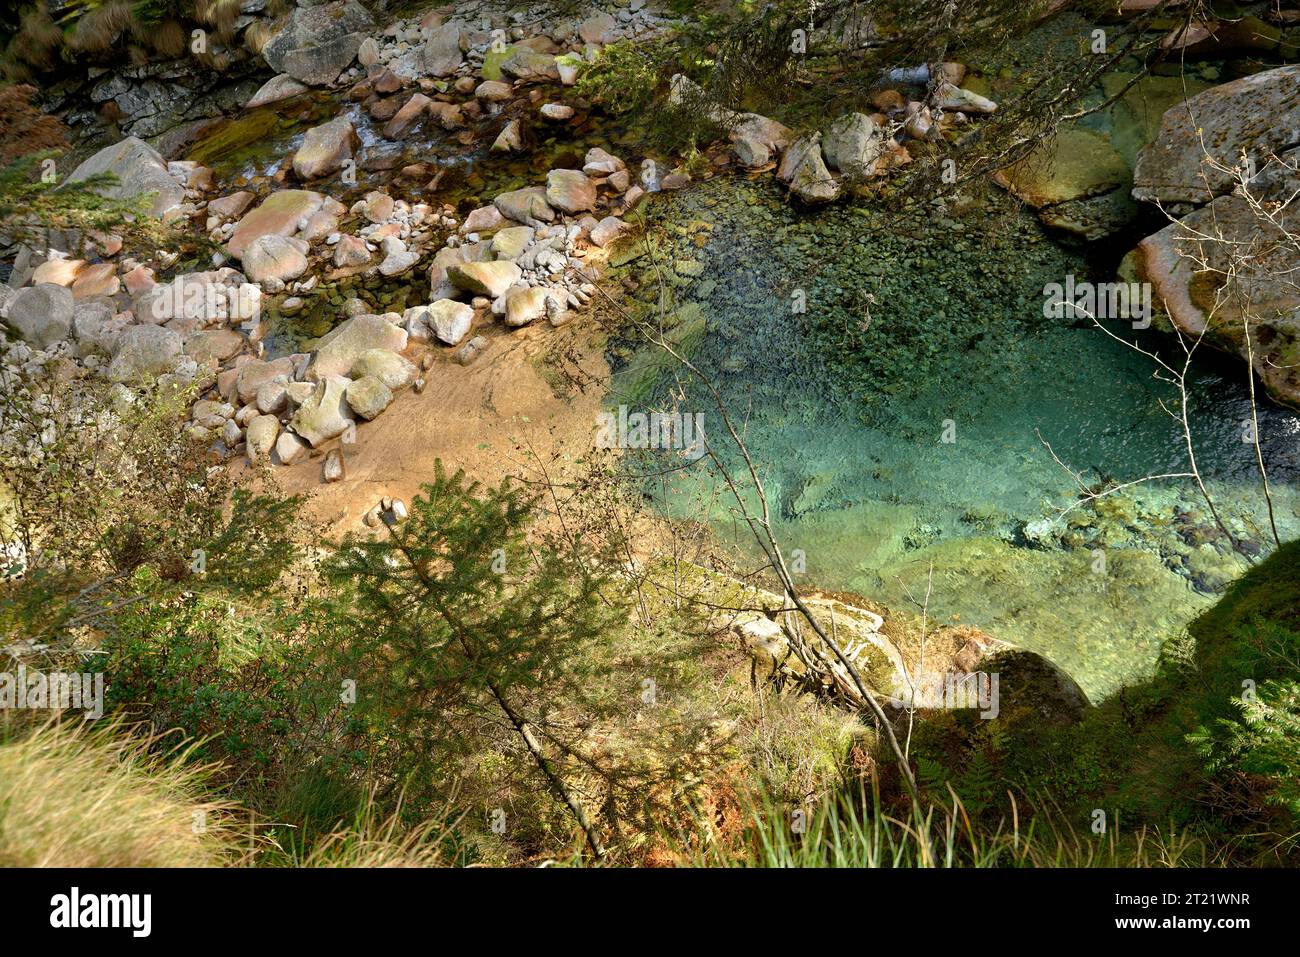 Parco naturale alta valle Antrona, cristallino del torrente Troncone nella natura selvaggia Foto Stock